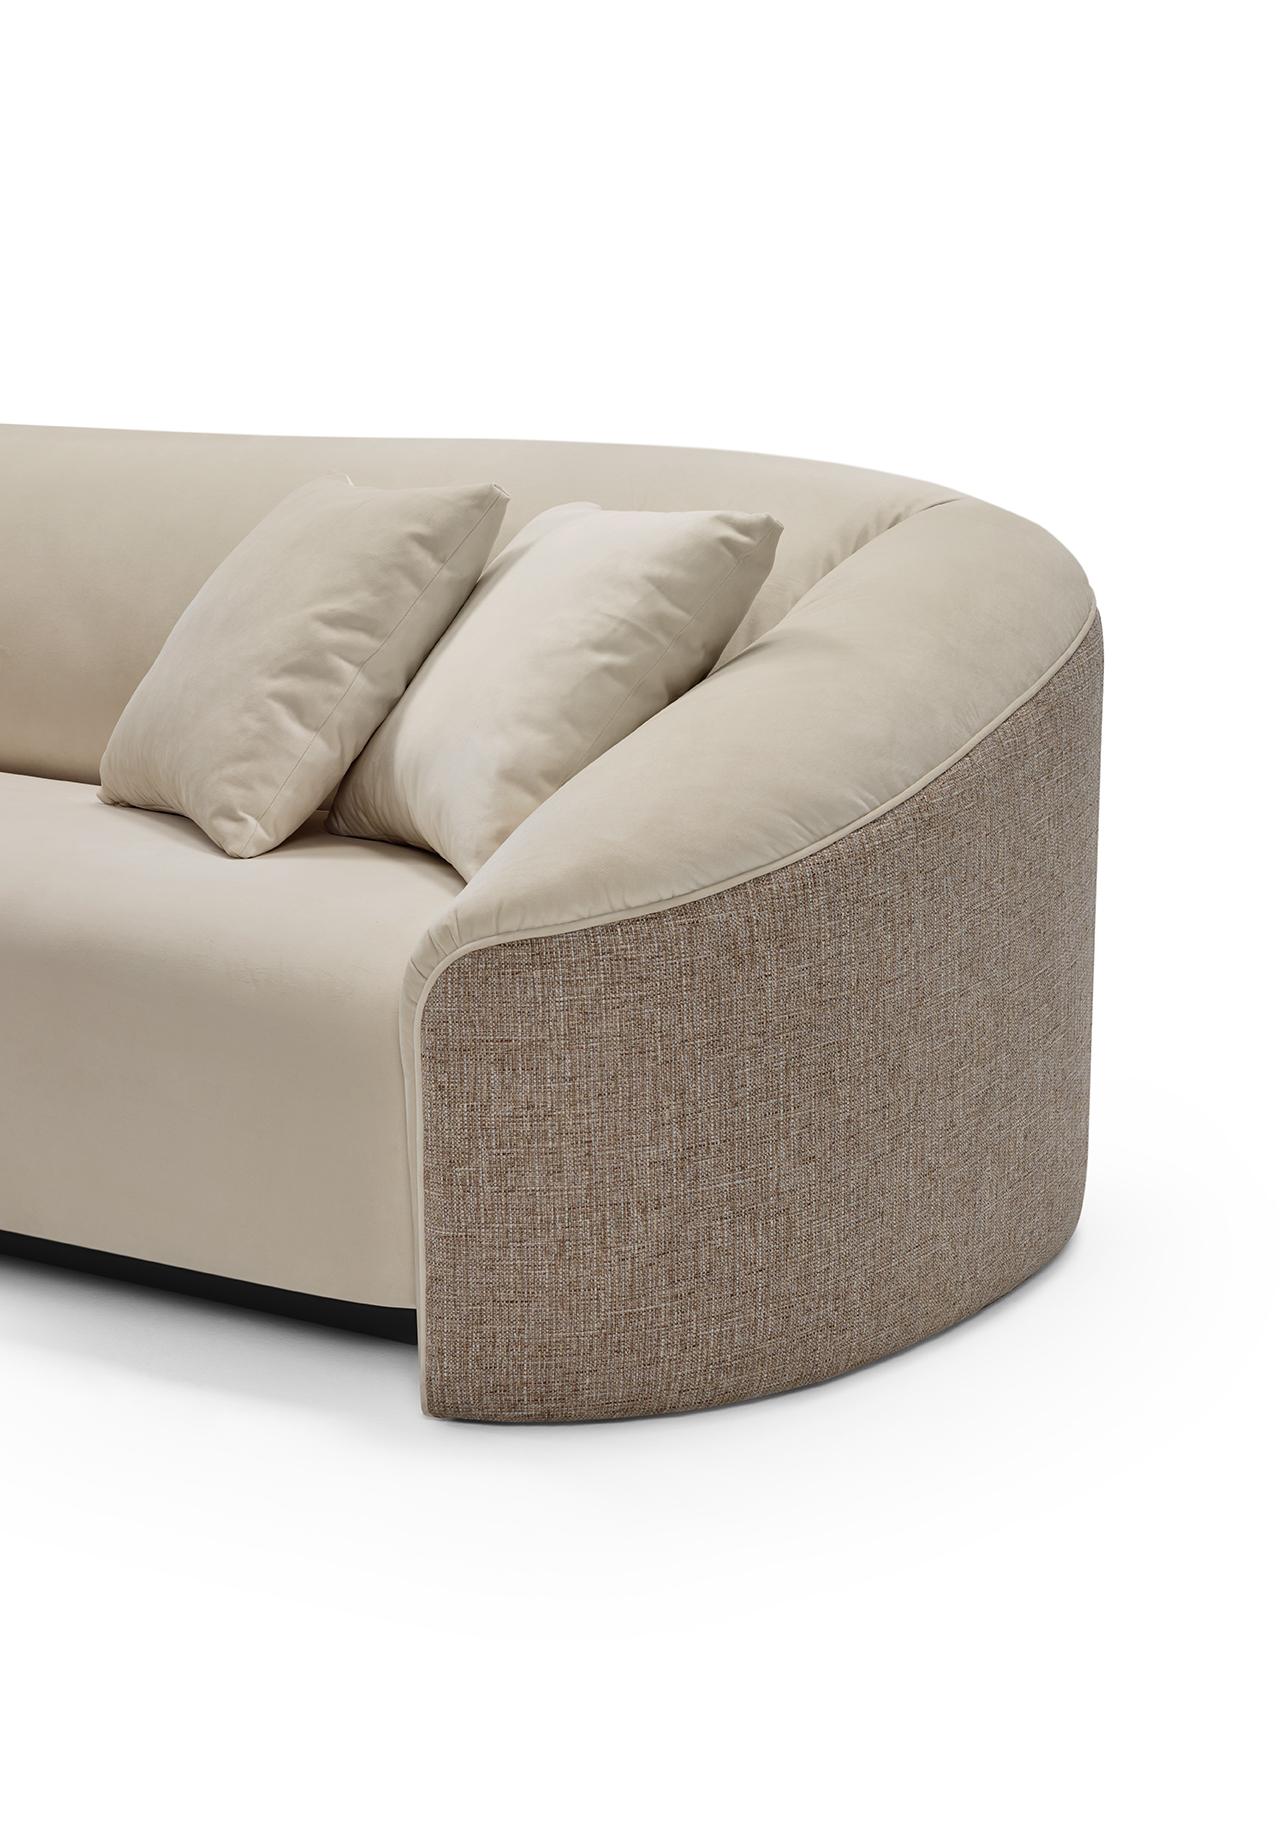 Das geschwungene Sofa DEAN wurde entwickelt, um ein überlegenes Komfortgefühl zu vermitteln. Die umhüllende Struktur und die ausgewogene Kombination aus Federn und Memory-Schaumstoff werden Sie in einen Moment wahrer Entspannung versetzen. Deans